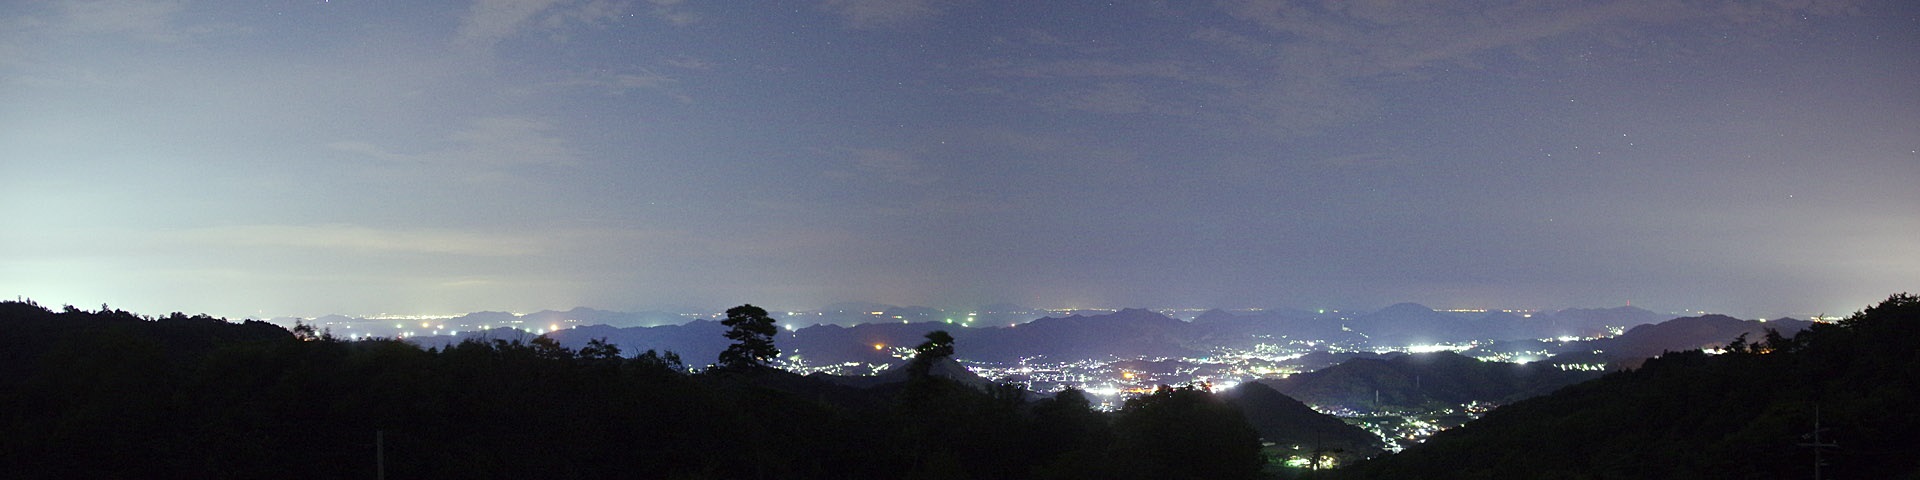 岡山天文台から見た瀬戸内海方面の夜景